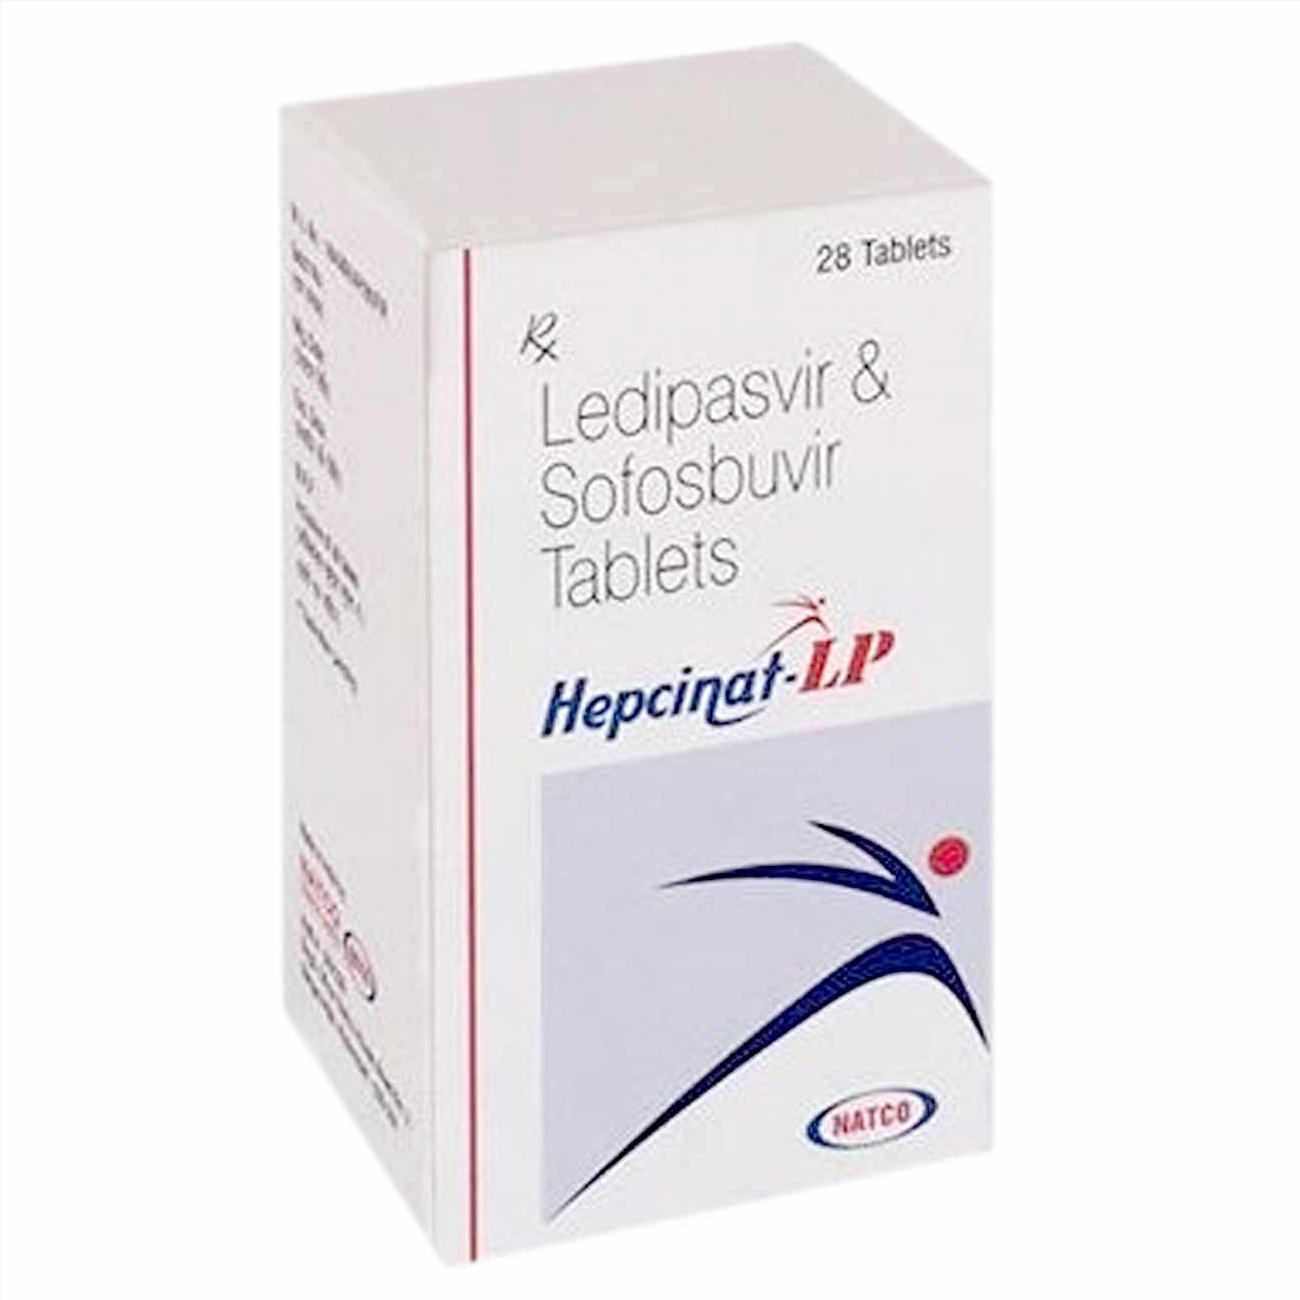 Thuốc Hepcinat mua ở đâu, thuốc Hepcinat LP giá bao nhiêu, thuốc Hepcinat xách tay mua ở đâu?